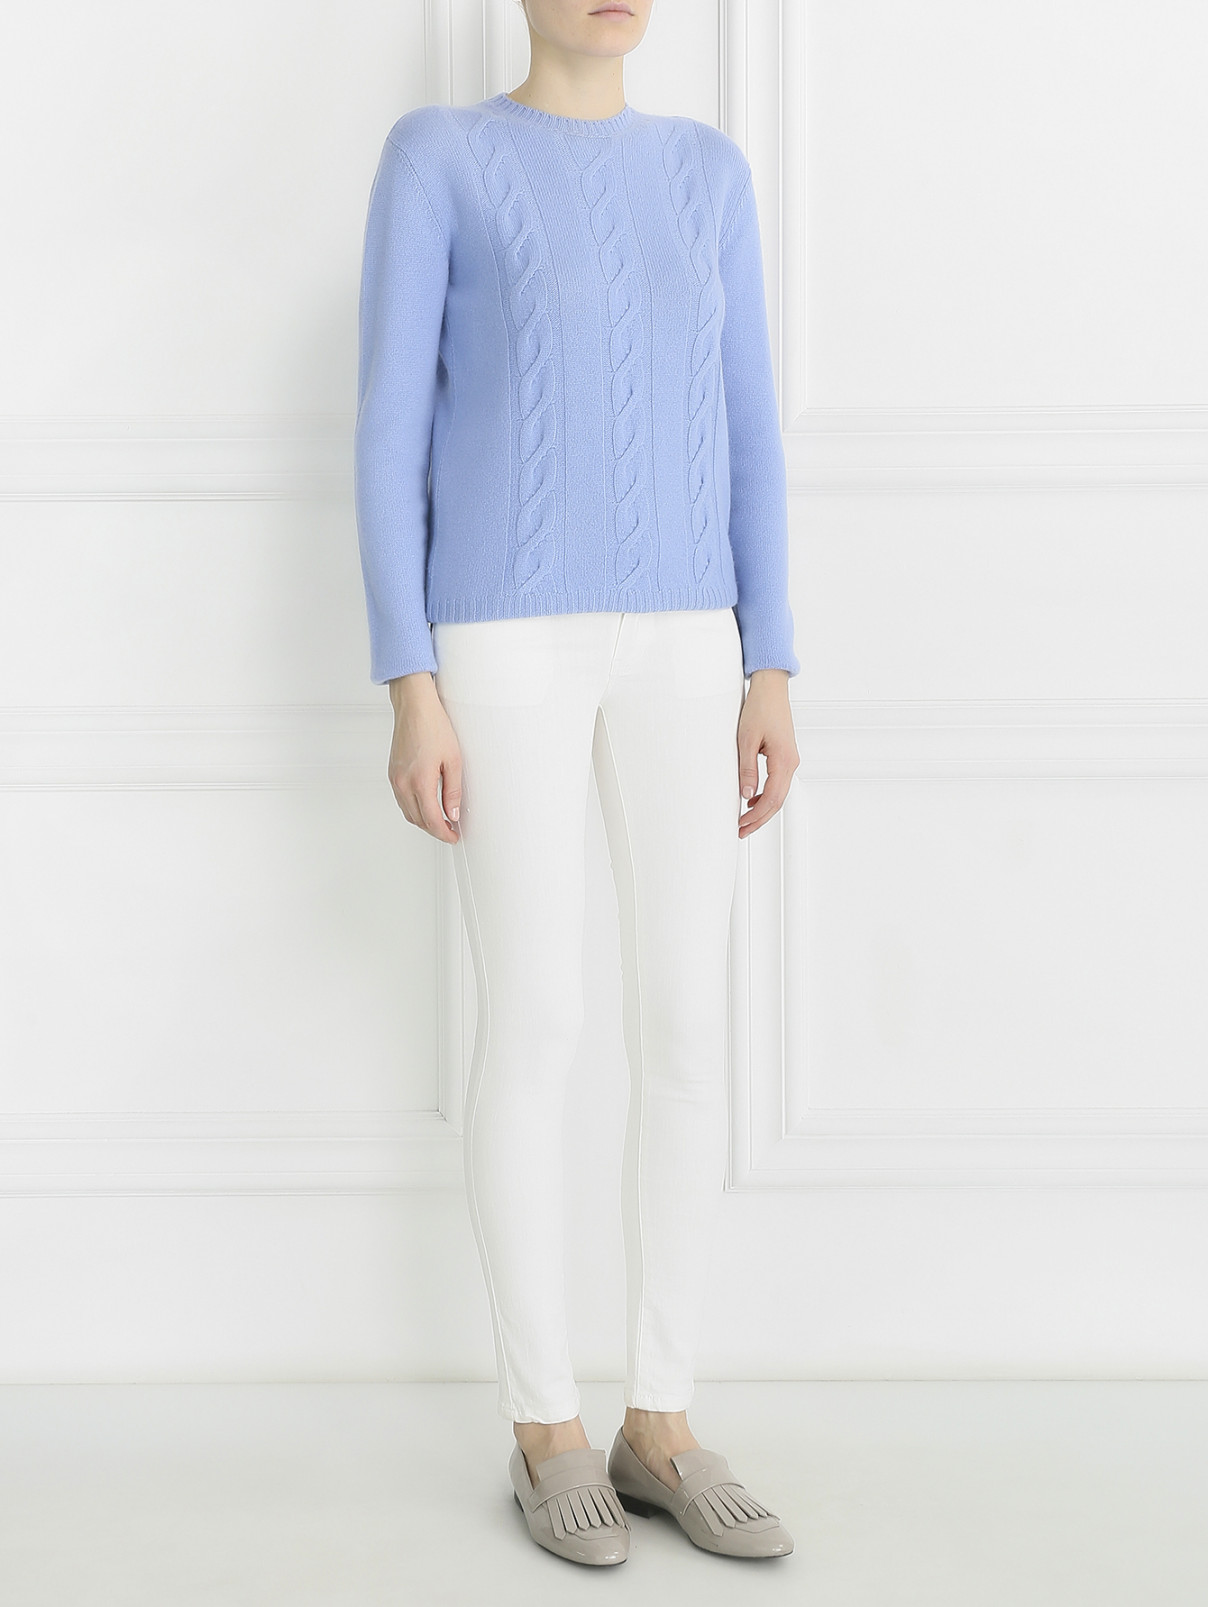 Узкие джинсы Ermanno Scervino  –  Модель Общий вид  – Цвет:  Белый